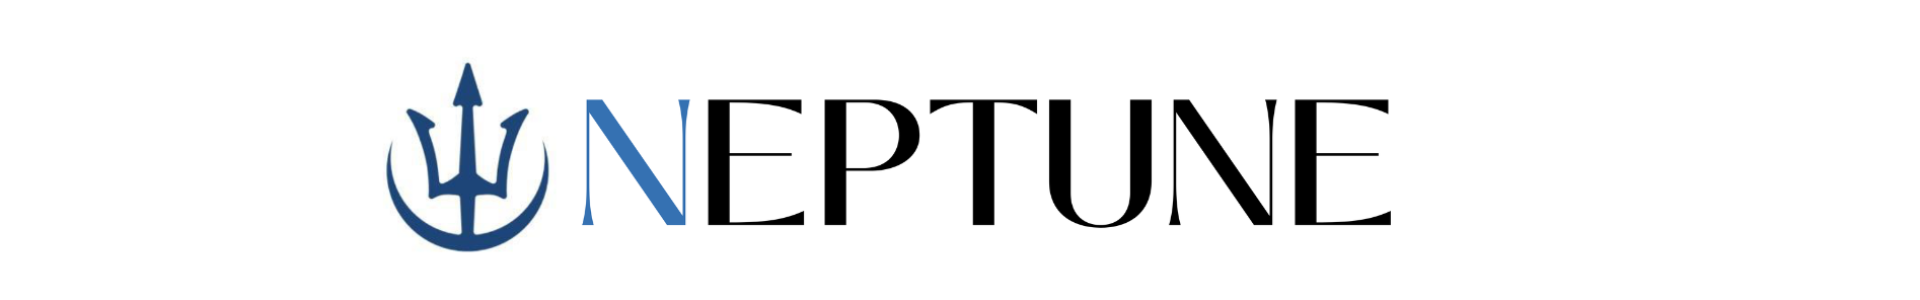 NEPTUNE logo